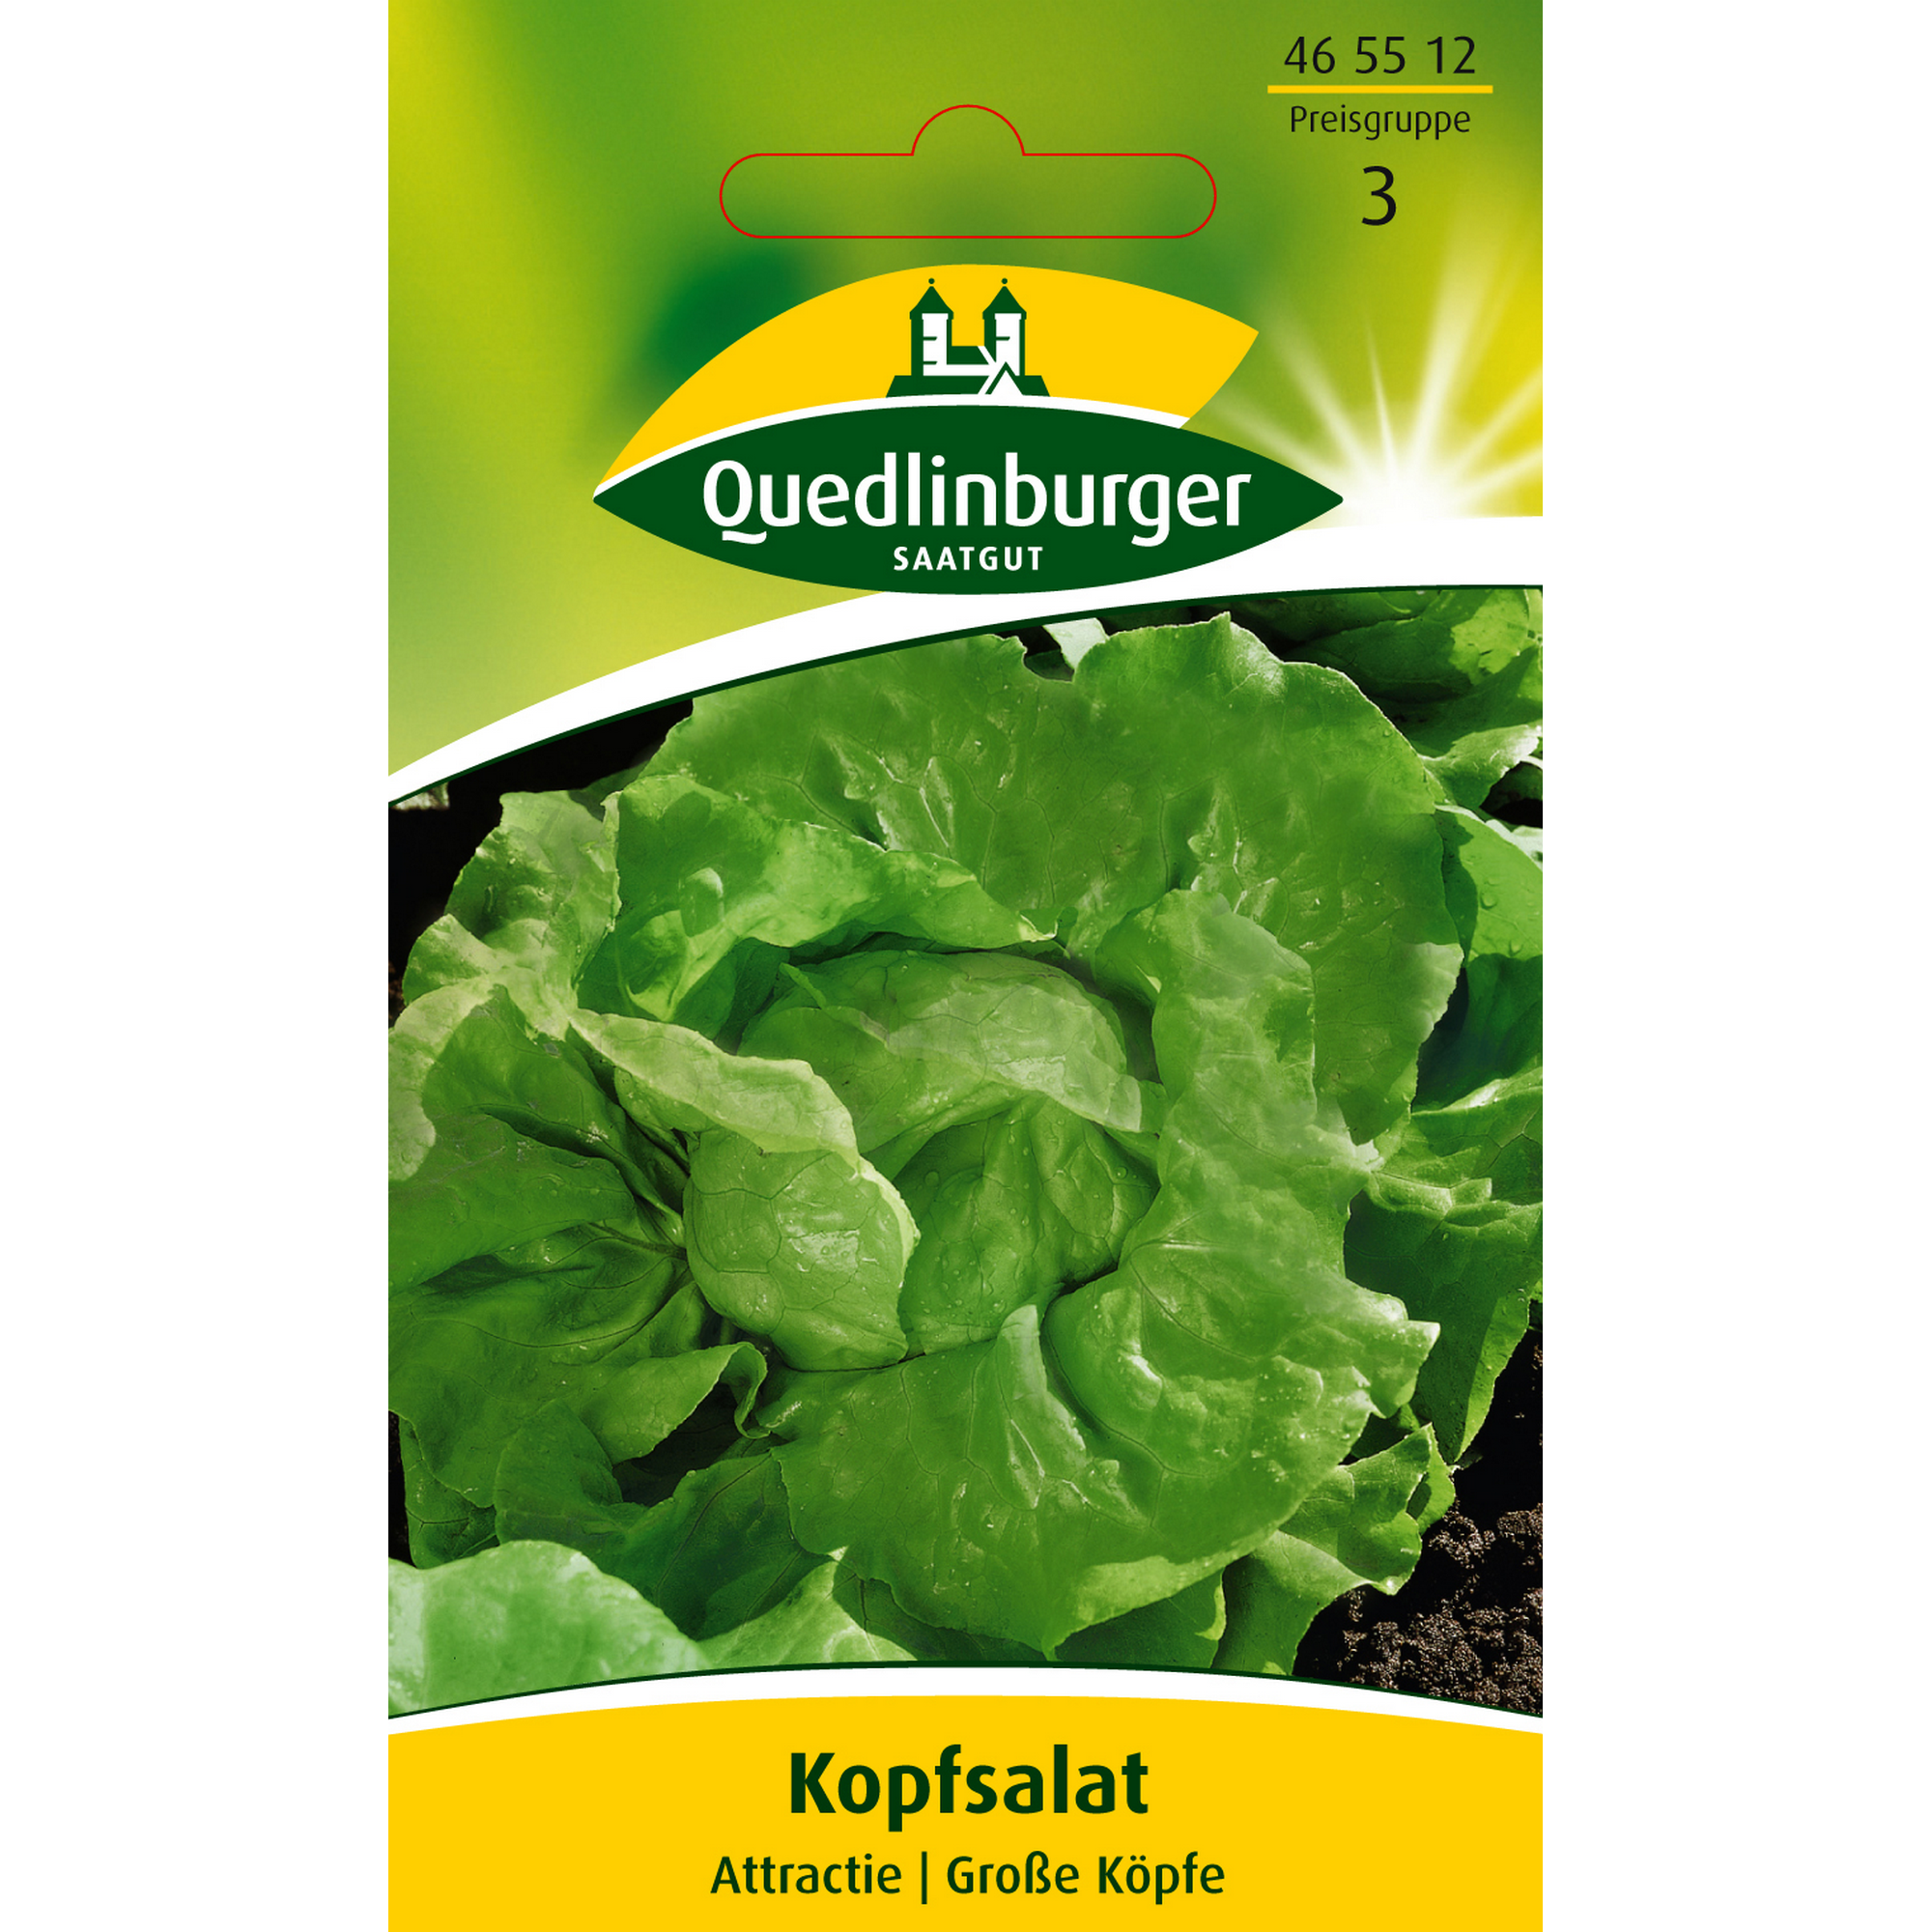 Kopfsalat 'Attractie' + product picture